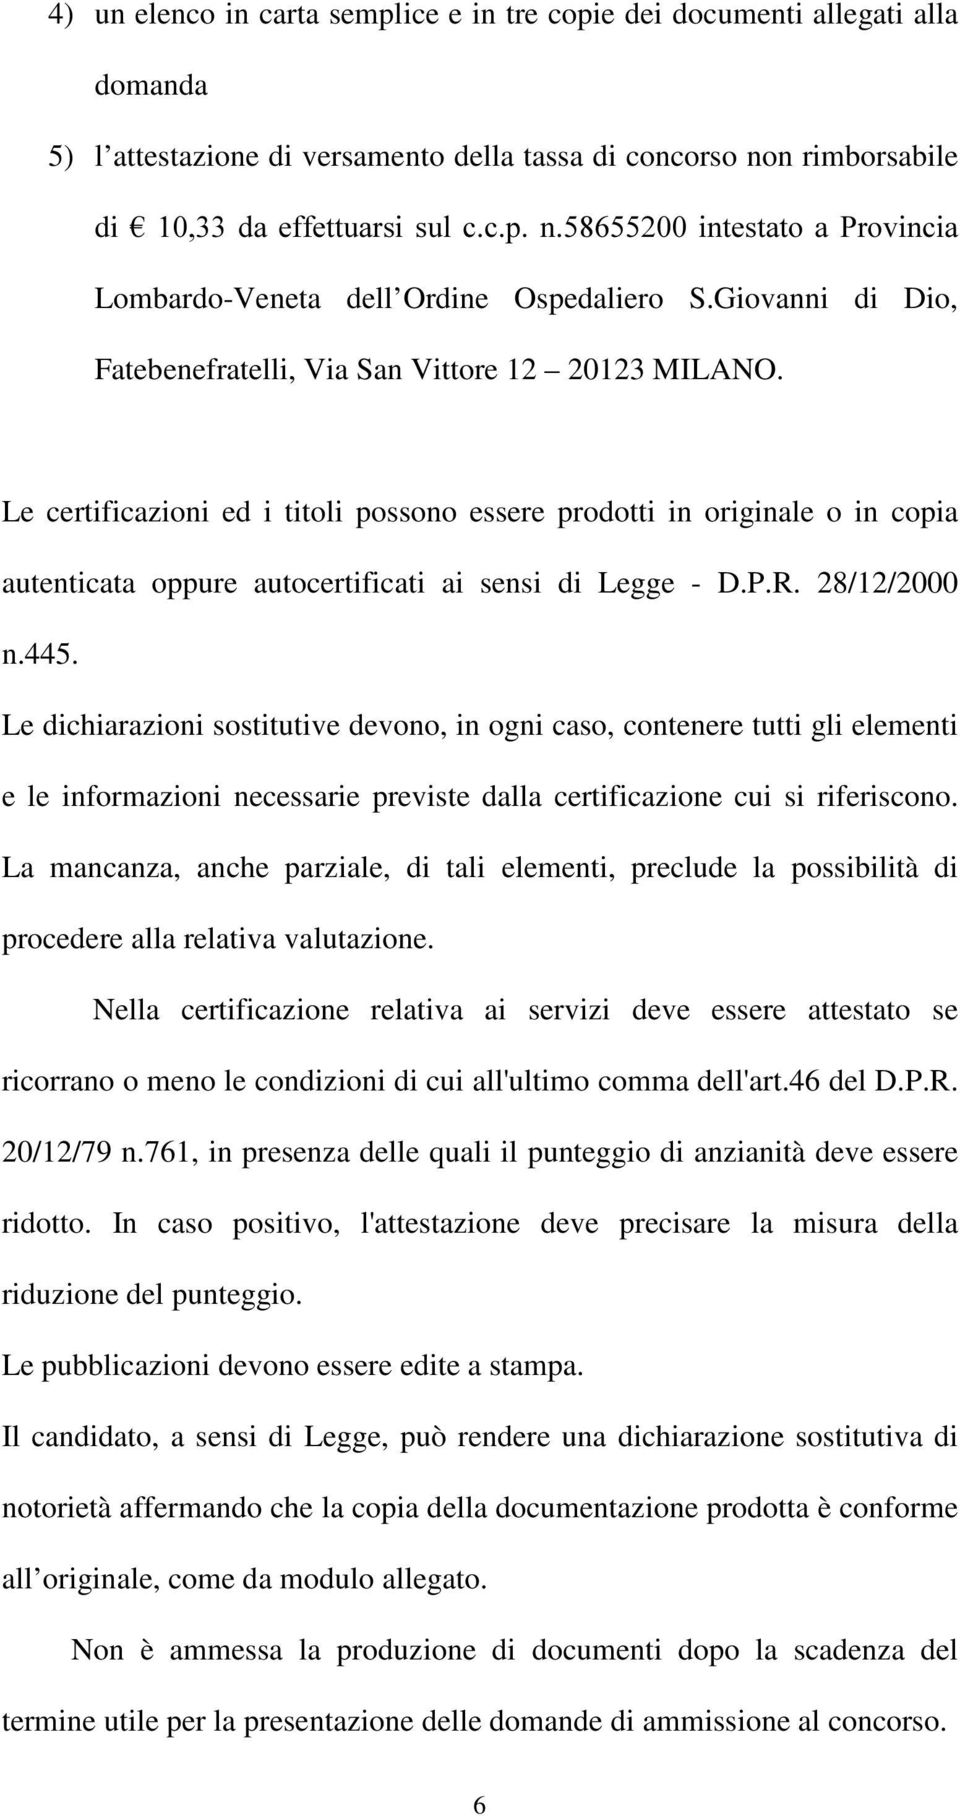 Le certificazioni ed i titoli possono essere prodotti in originale o in copia autenticata oppure autocertificati ai sensi di Legge - D.P.R. 28/12/2000 n.445.